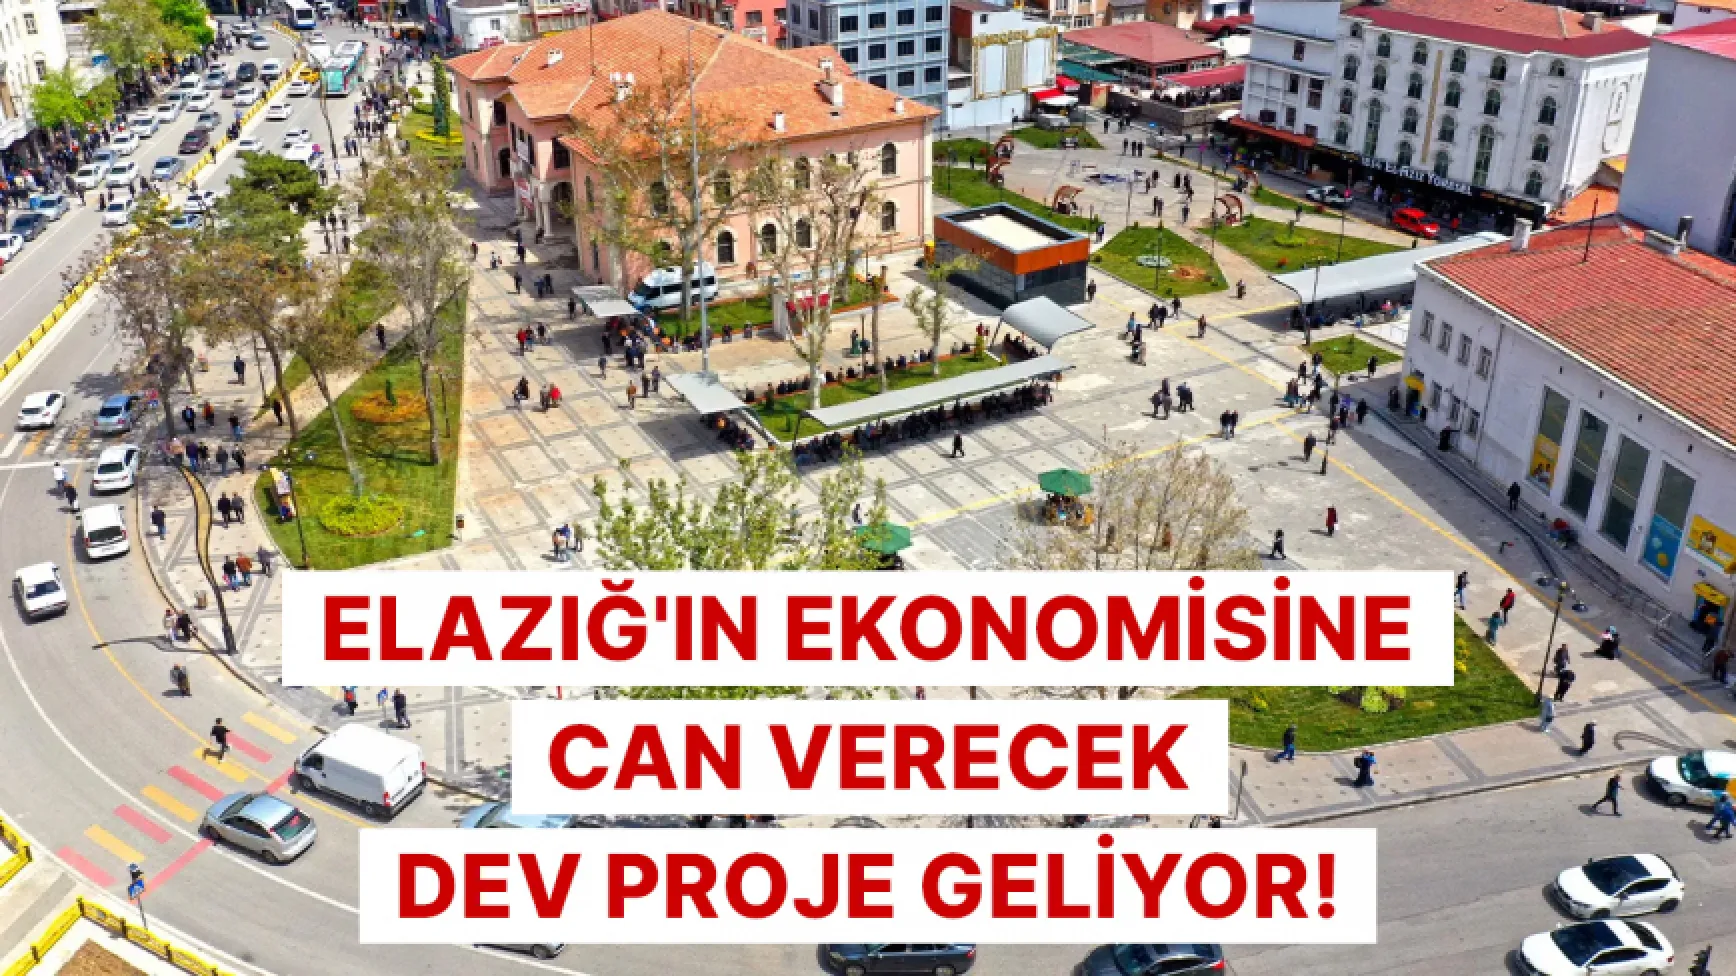 Elazığ'ın ekonomisine can verecek dev proje geliyor!